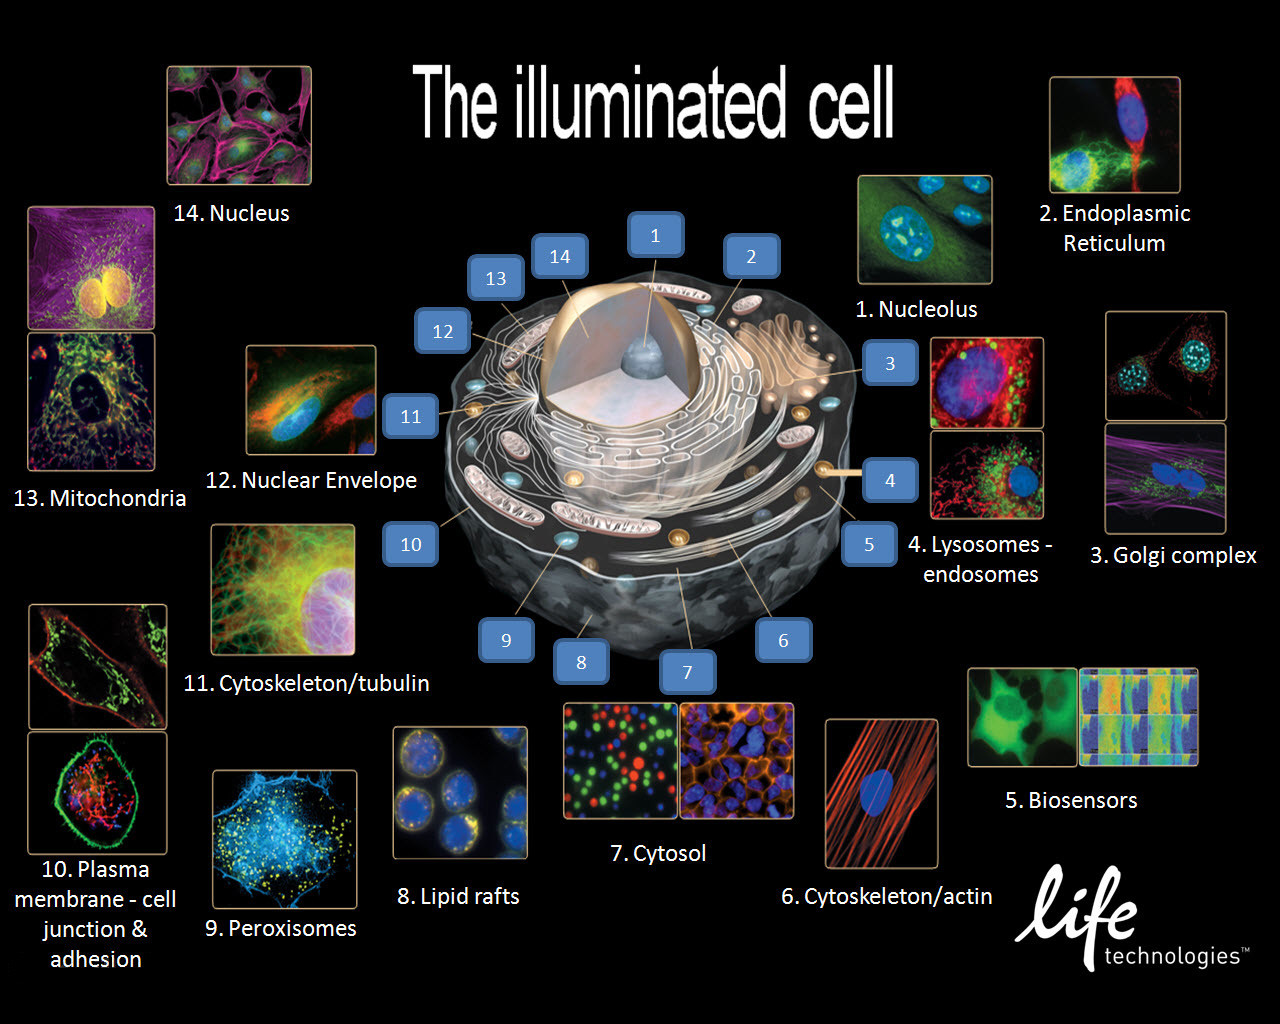 Les différents organites de la cellule eucaryote vu par immunofluorescence